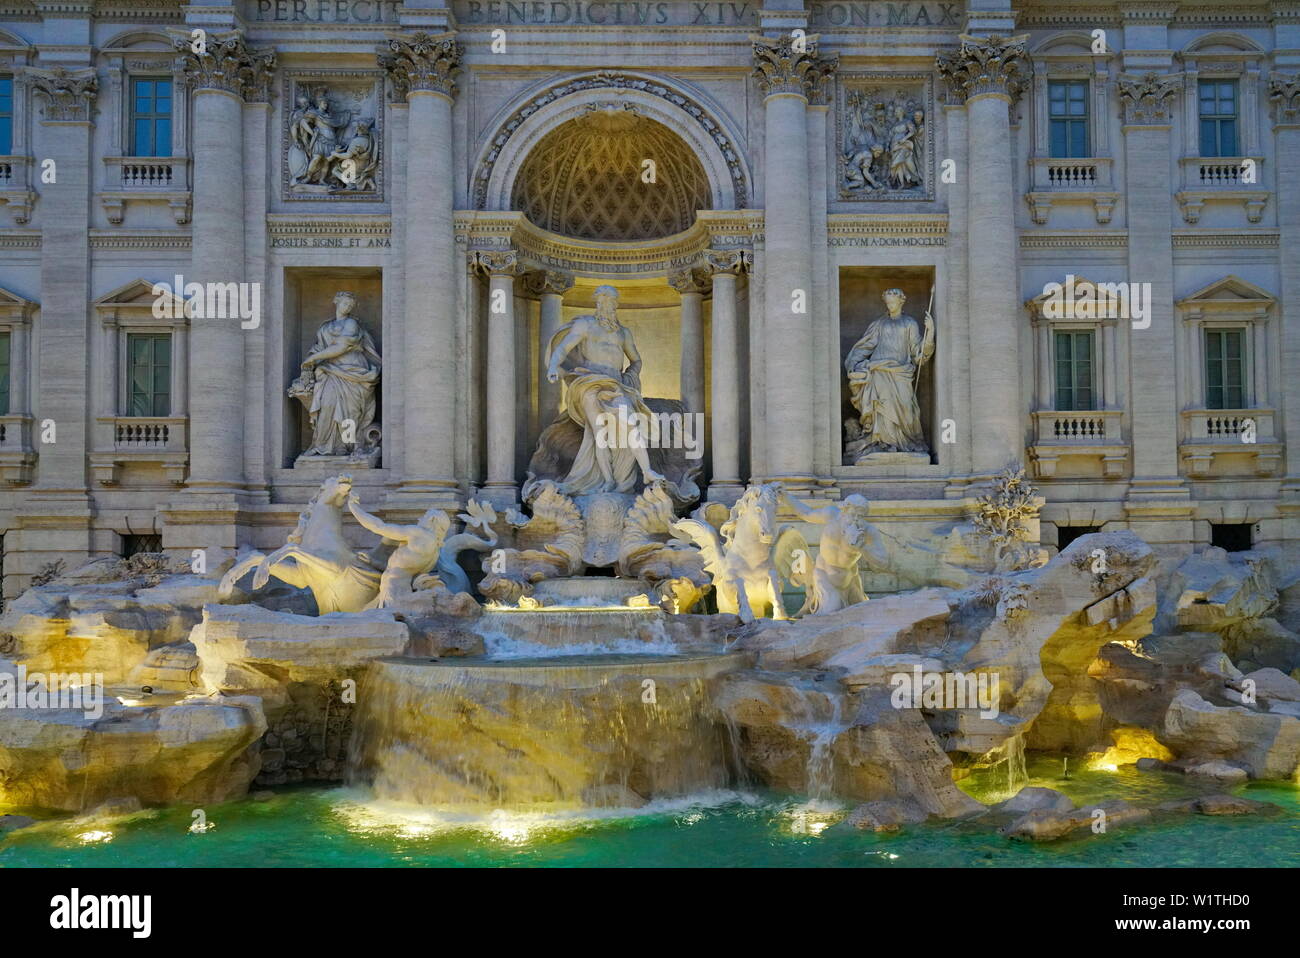 Célèbre et l'une des plus belle fontaine de Rome - Fontaine de Trevi (Fontana di Trevi). Italie Banque D'Images